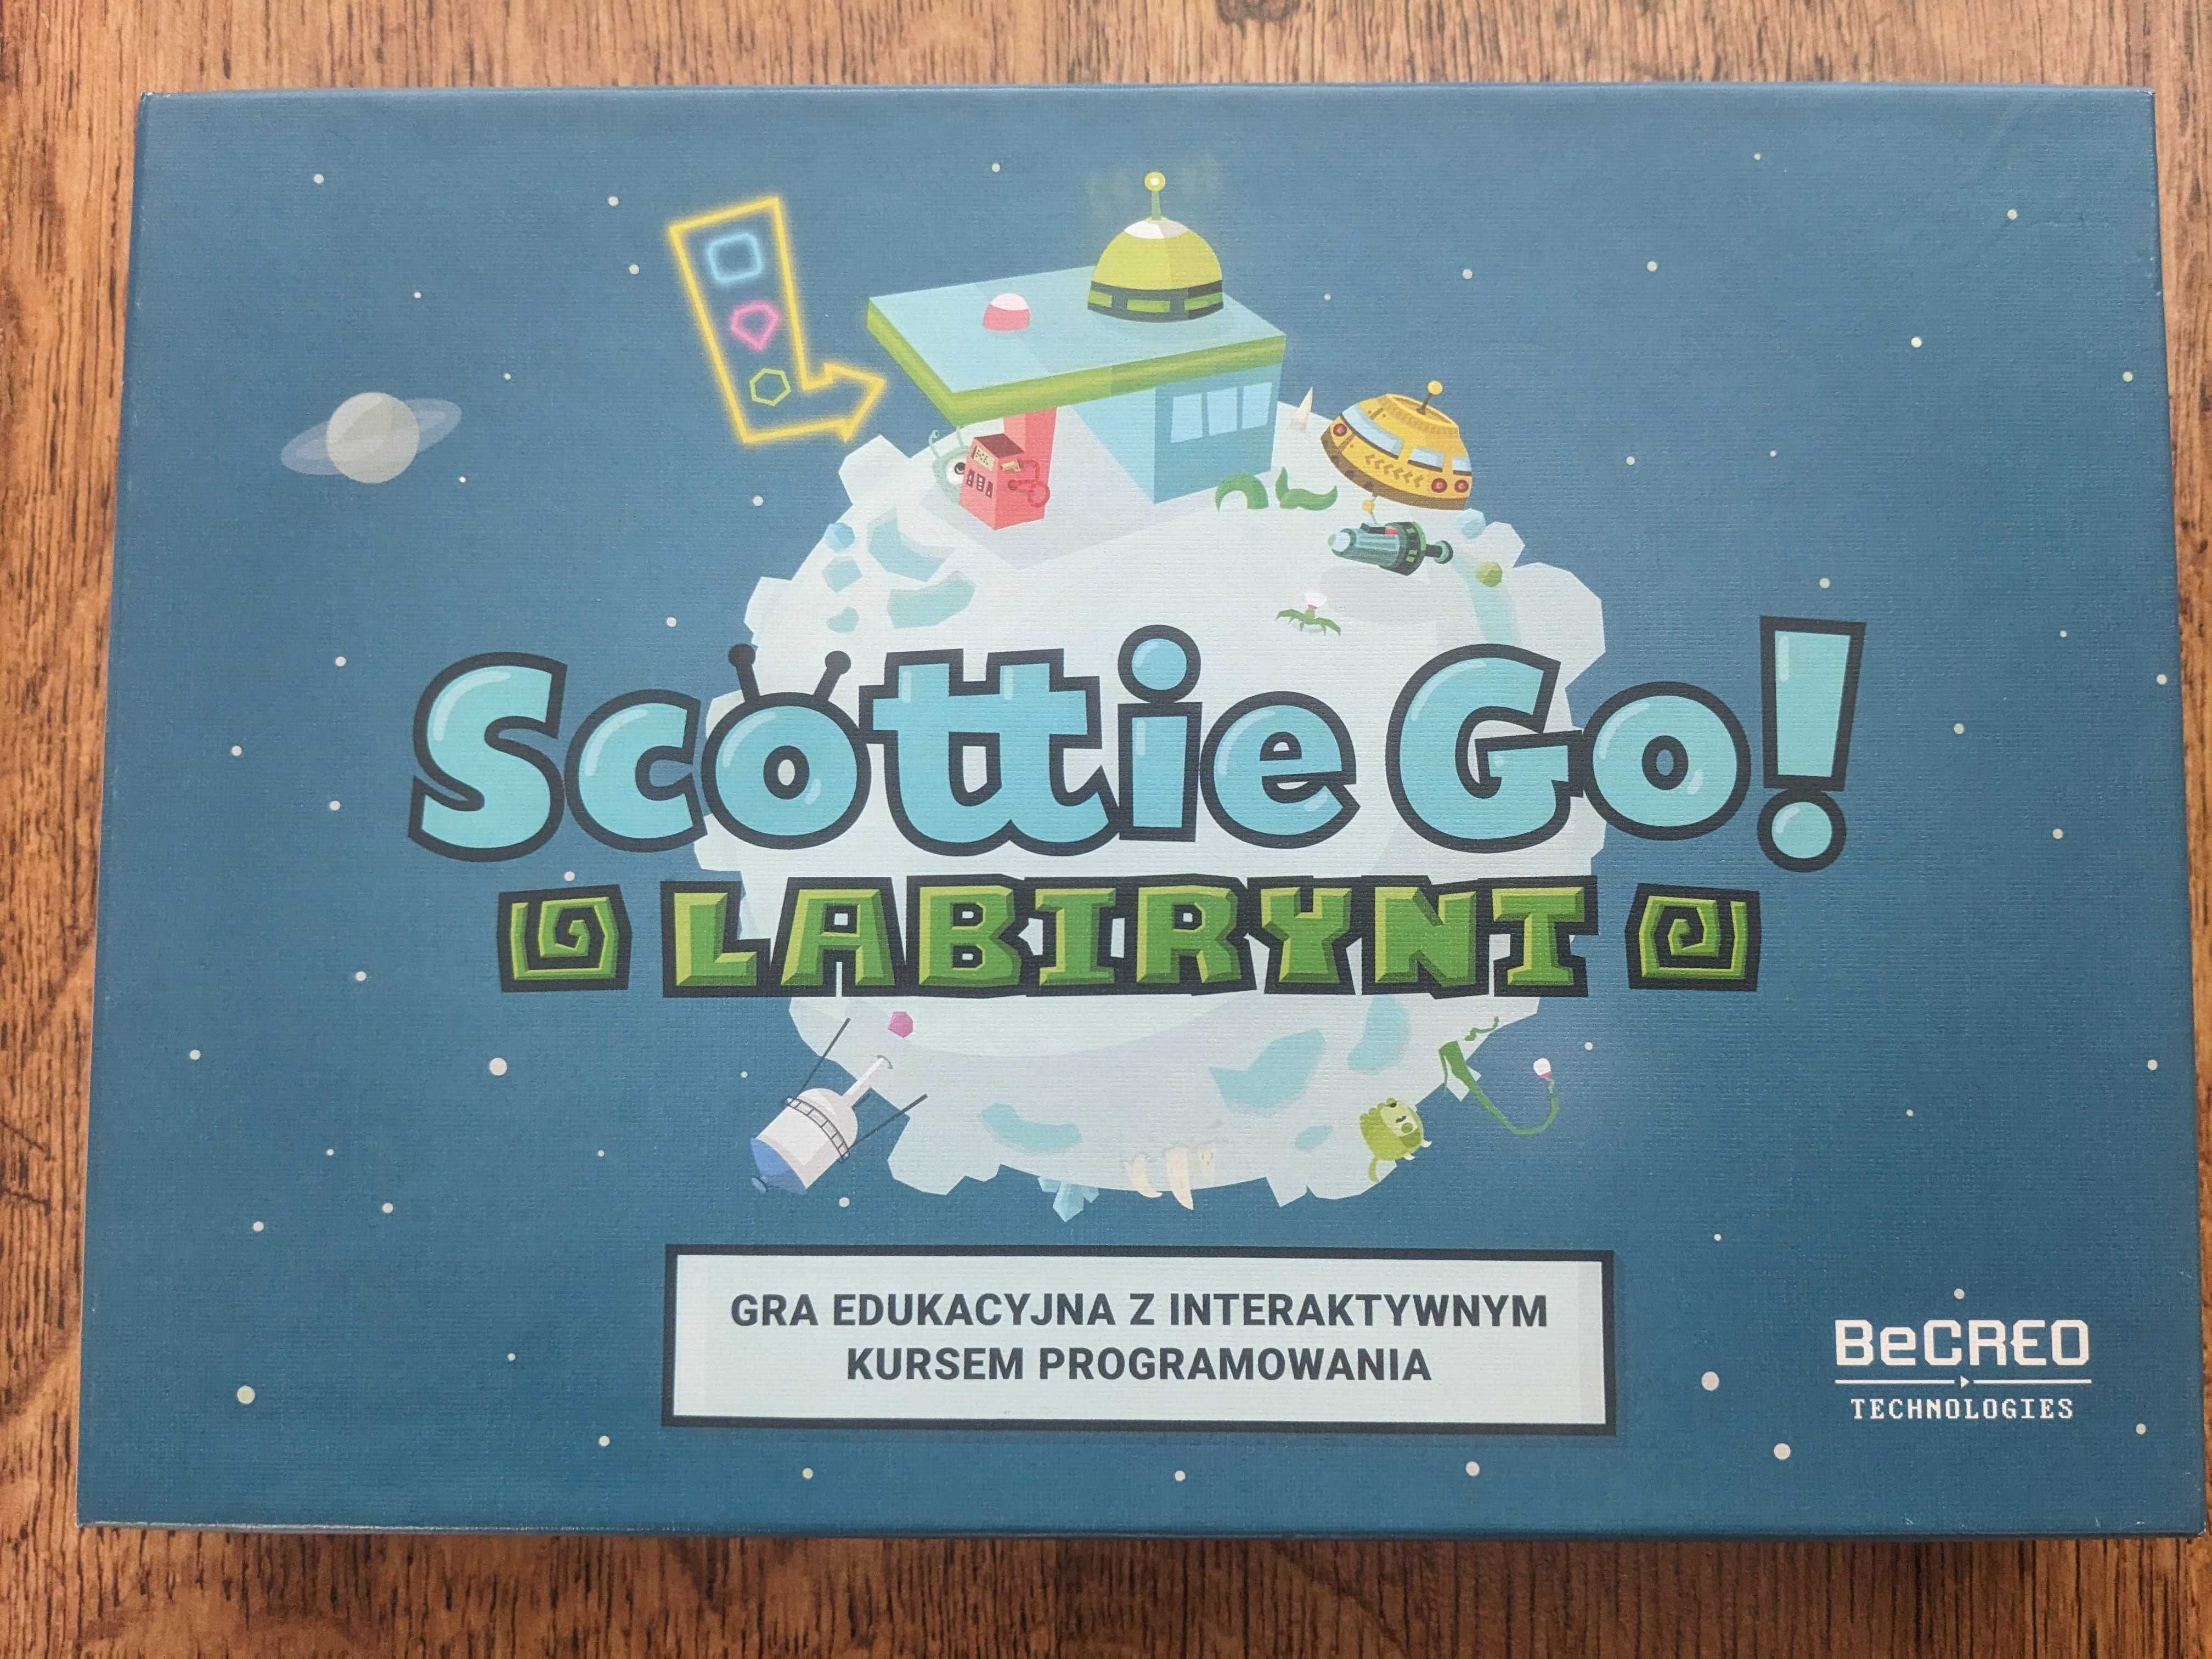 Scottie Go! Labirynt. Gra edukacyjna z kursem programowania